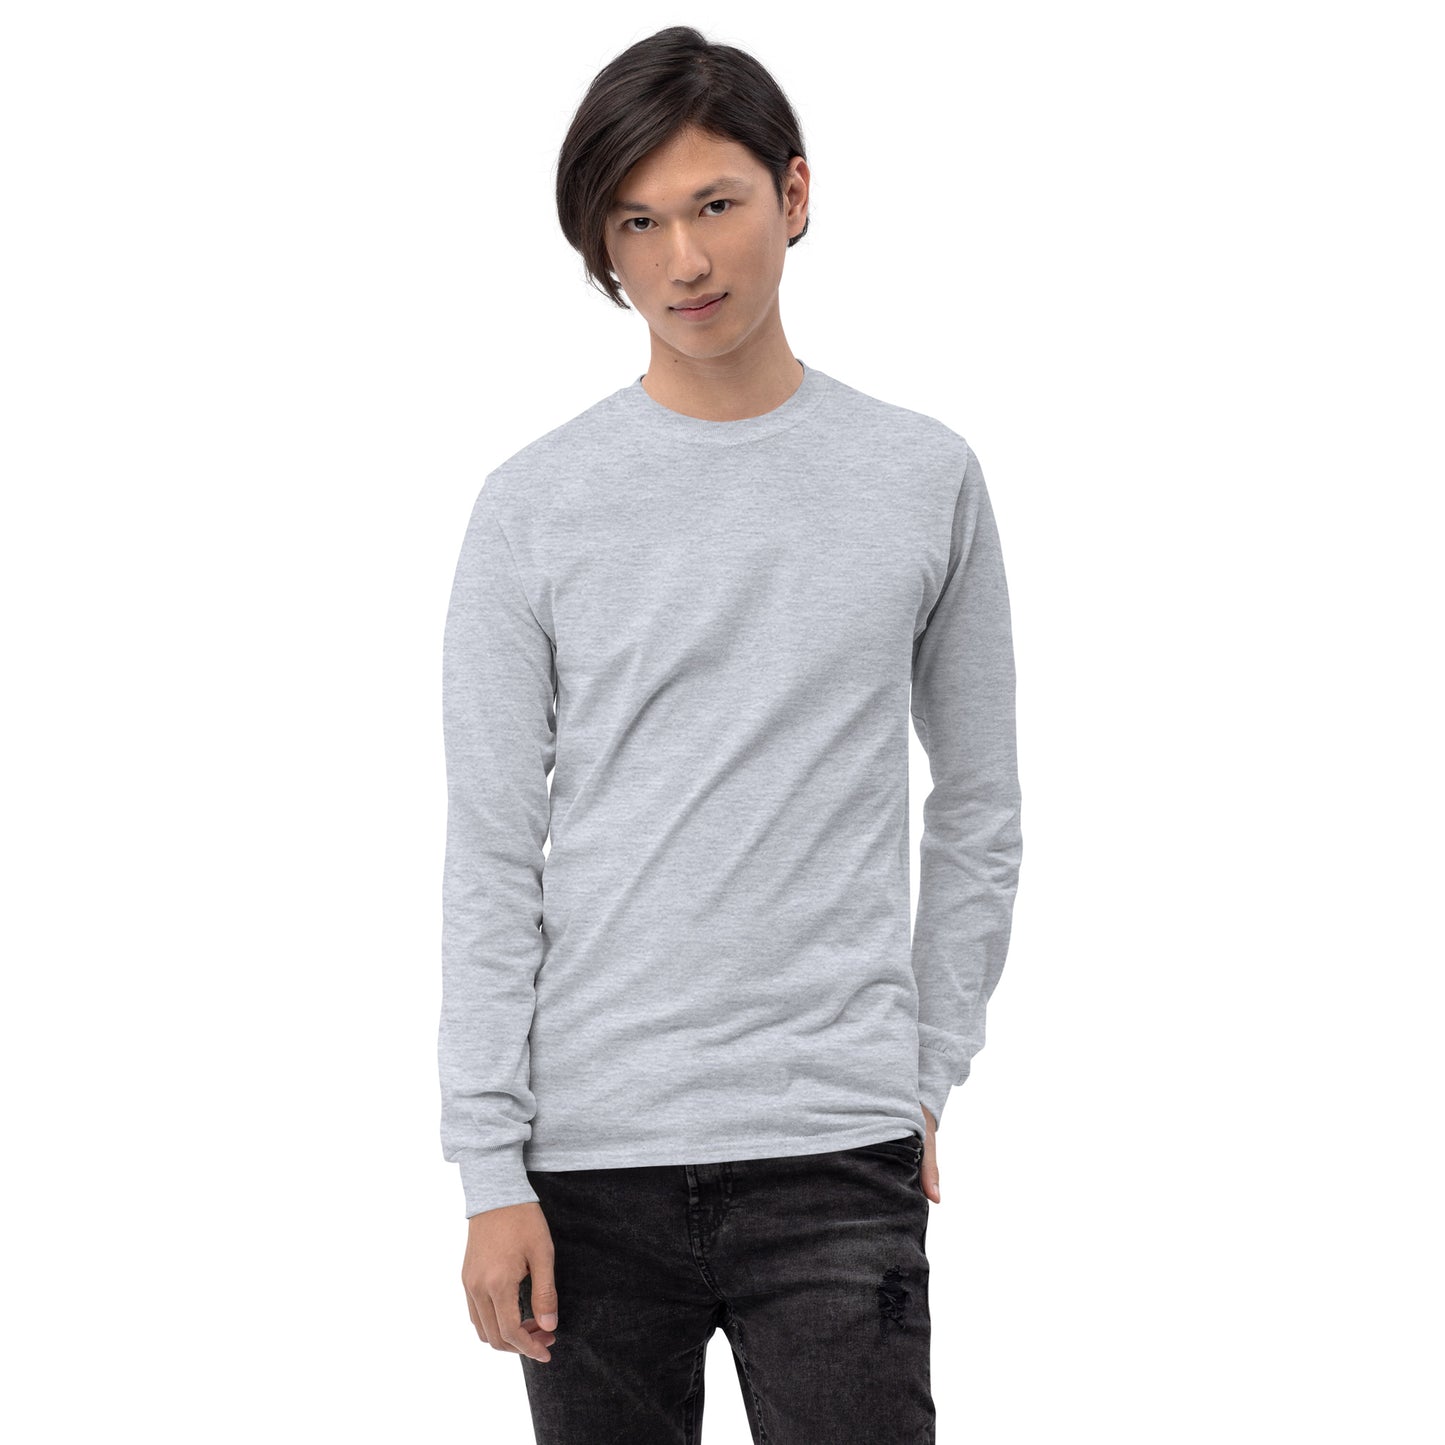 Sweatshirt clássica - Impressão nas costas